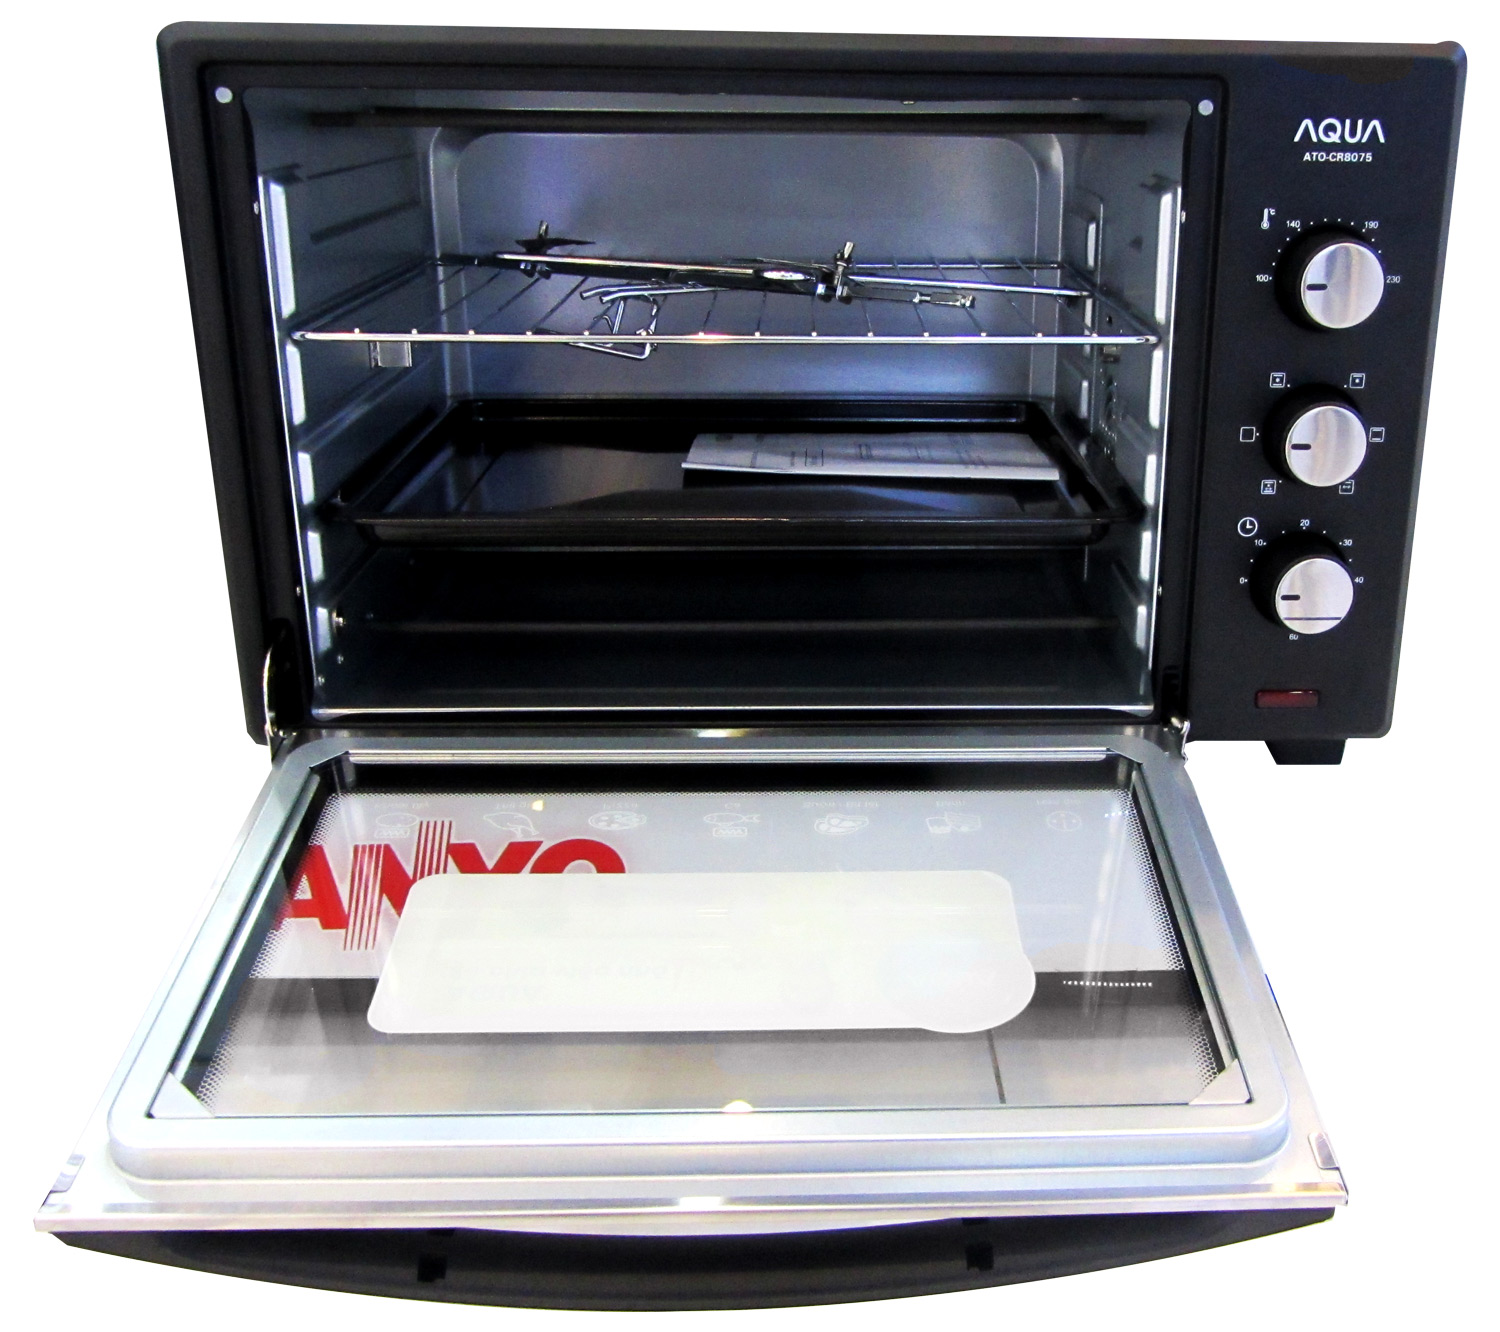 LÒ NƯỚNG 45L Aqua ATO-CR8075 có chức năng nướng đối lưu nhiệt và 6 chức năng nướng hiện đại chất liệu lò nướng bằng inox bền chắc cửa kiếng 2 lớp an toàn với người sử dụng